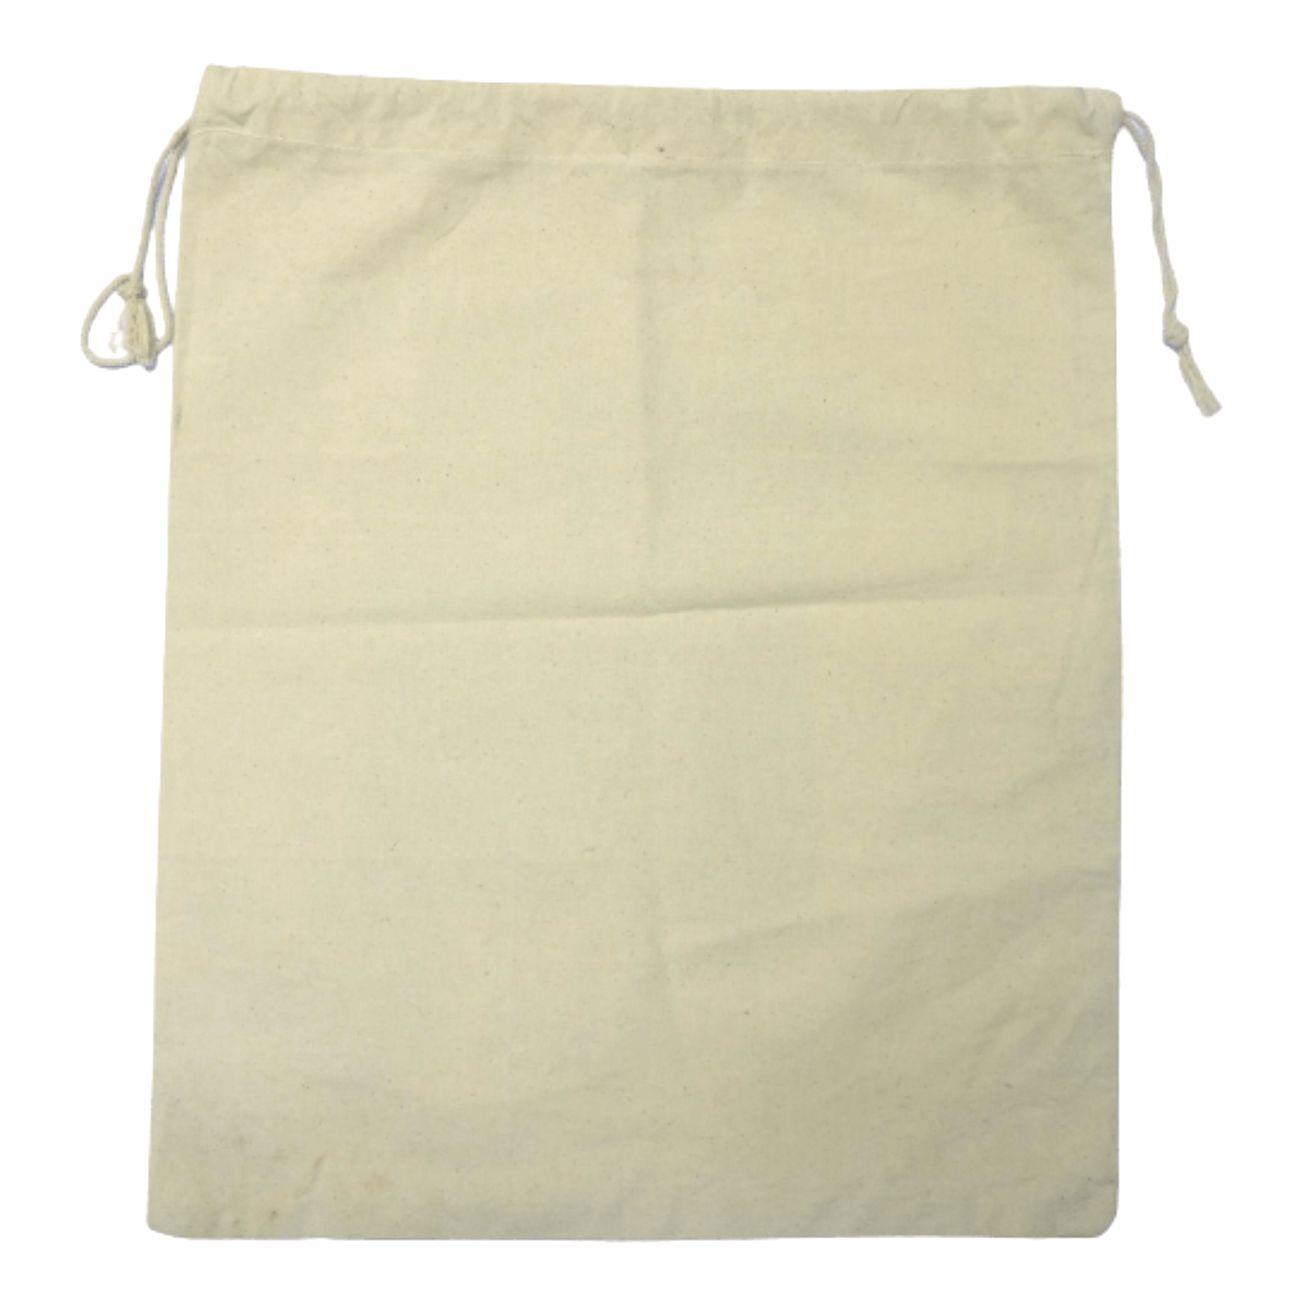 Large Cotton Bag 15 x 18 inch - Unbleached